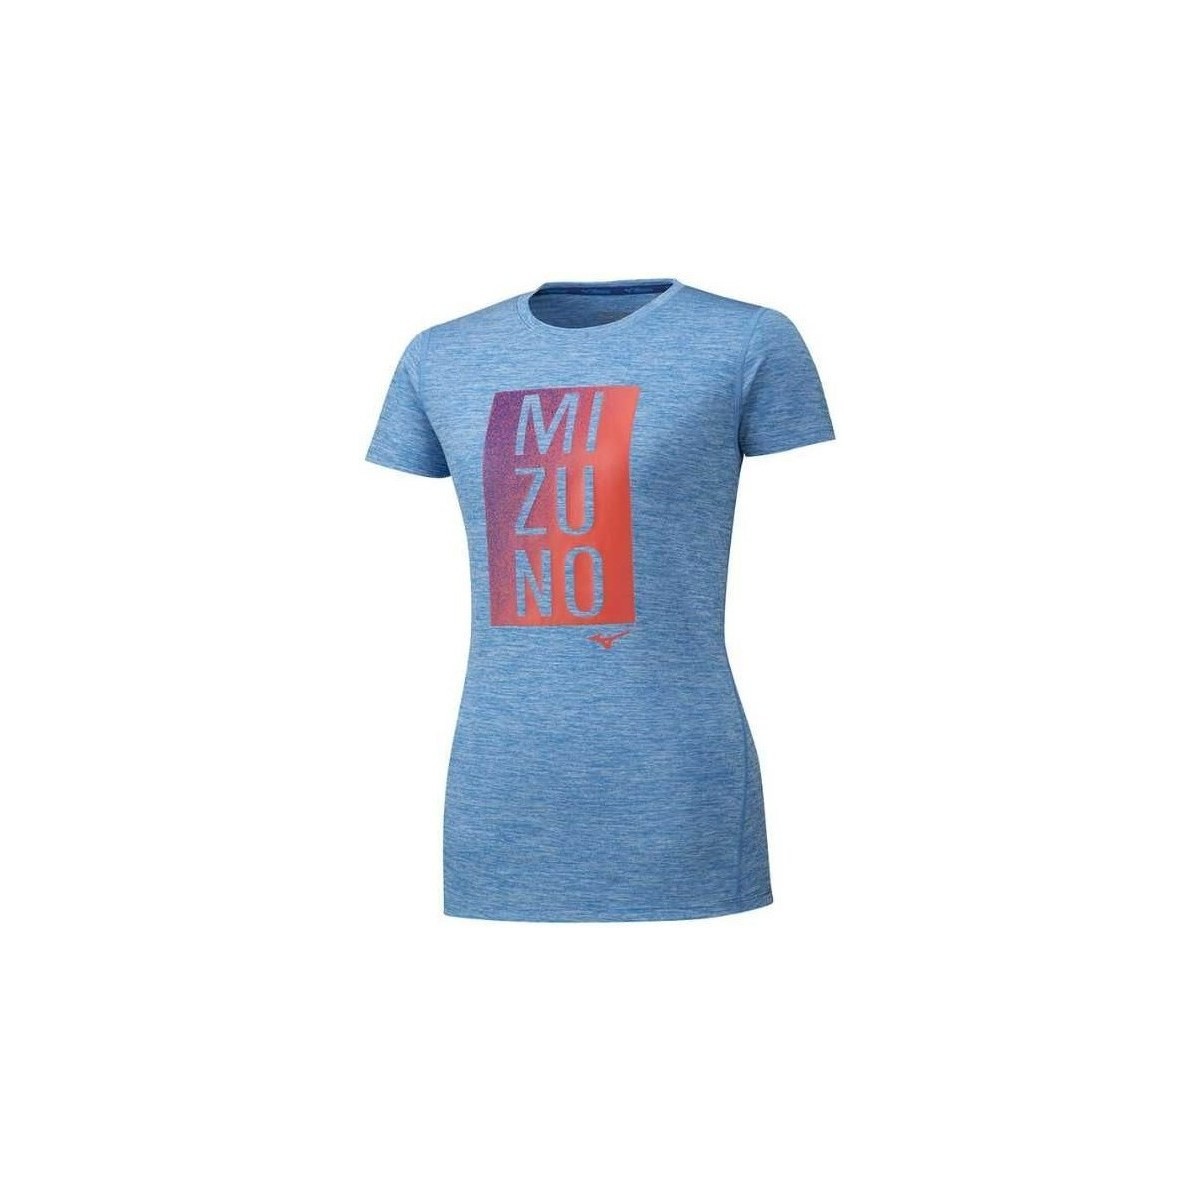 vaatteet Naiset Lyhythihainen t-paita Mizuno Core Graphic Tee Sininen